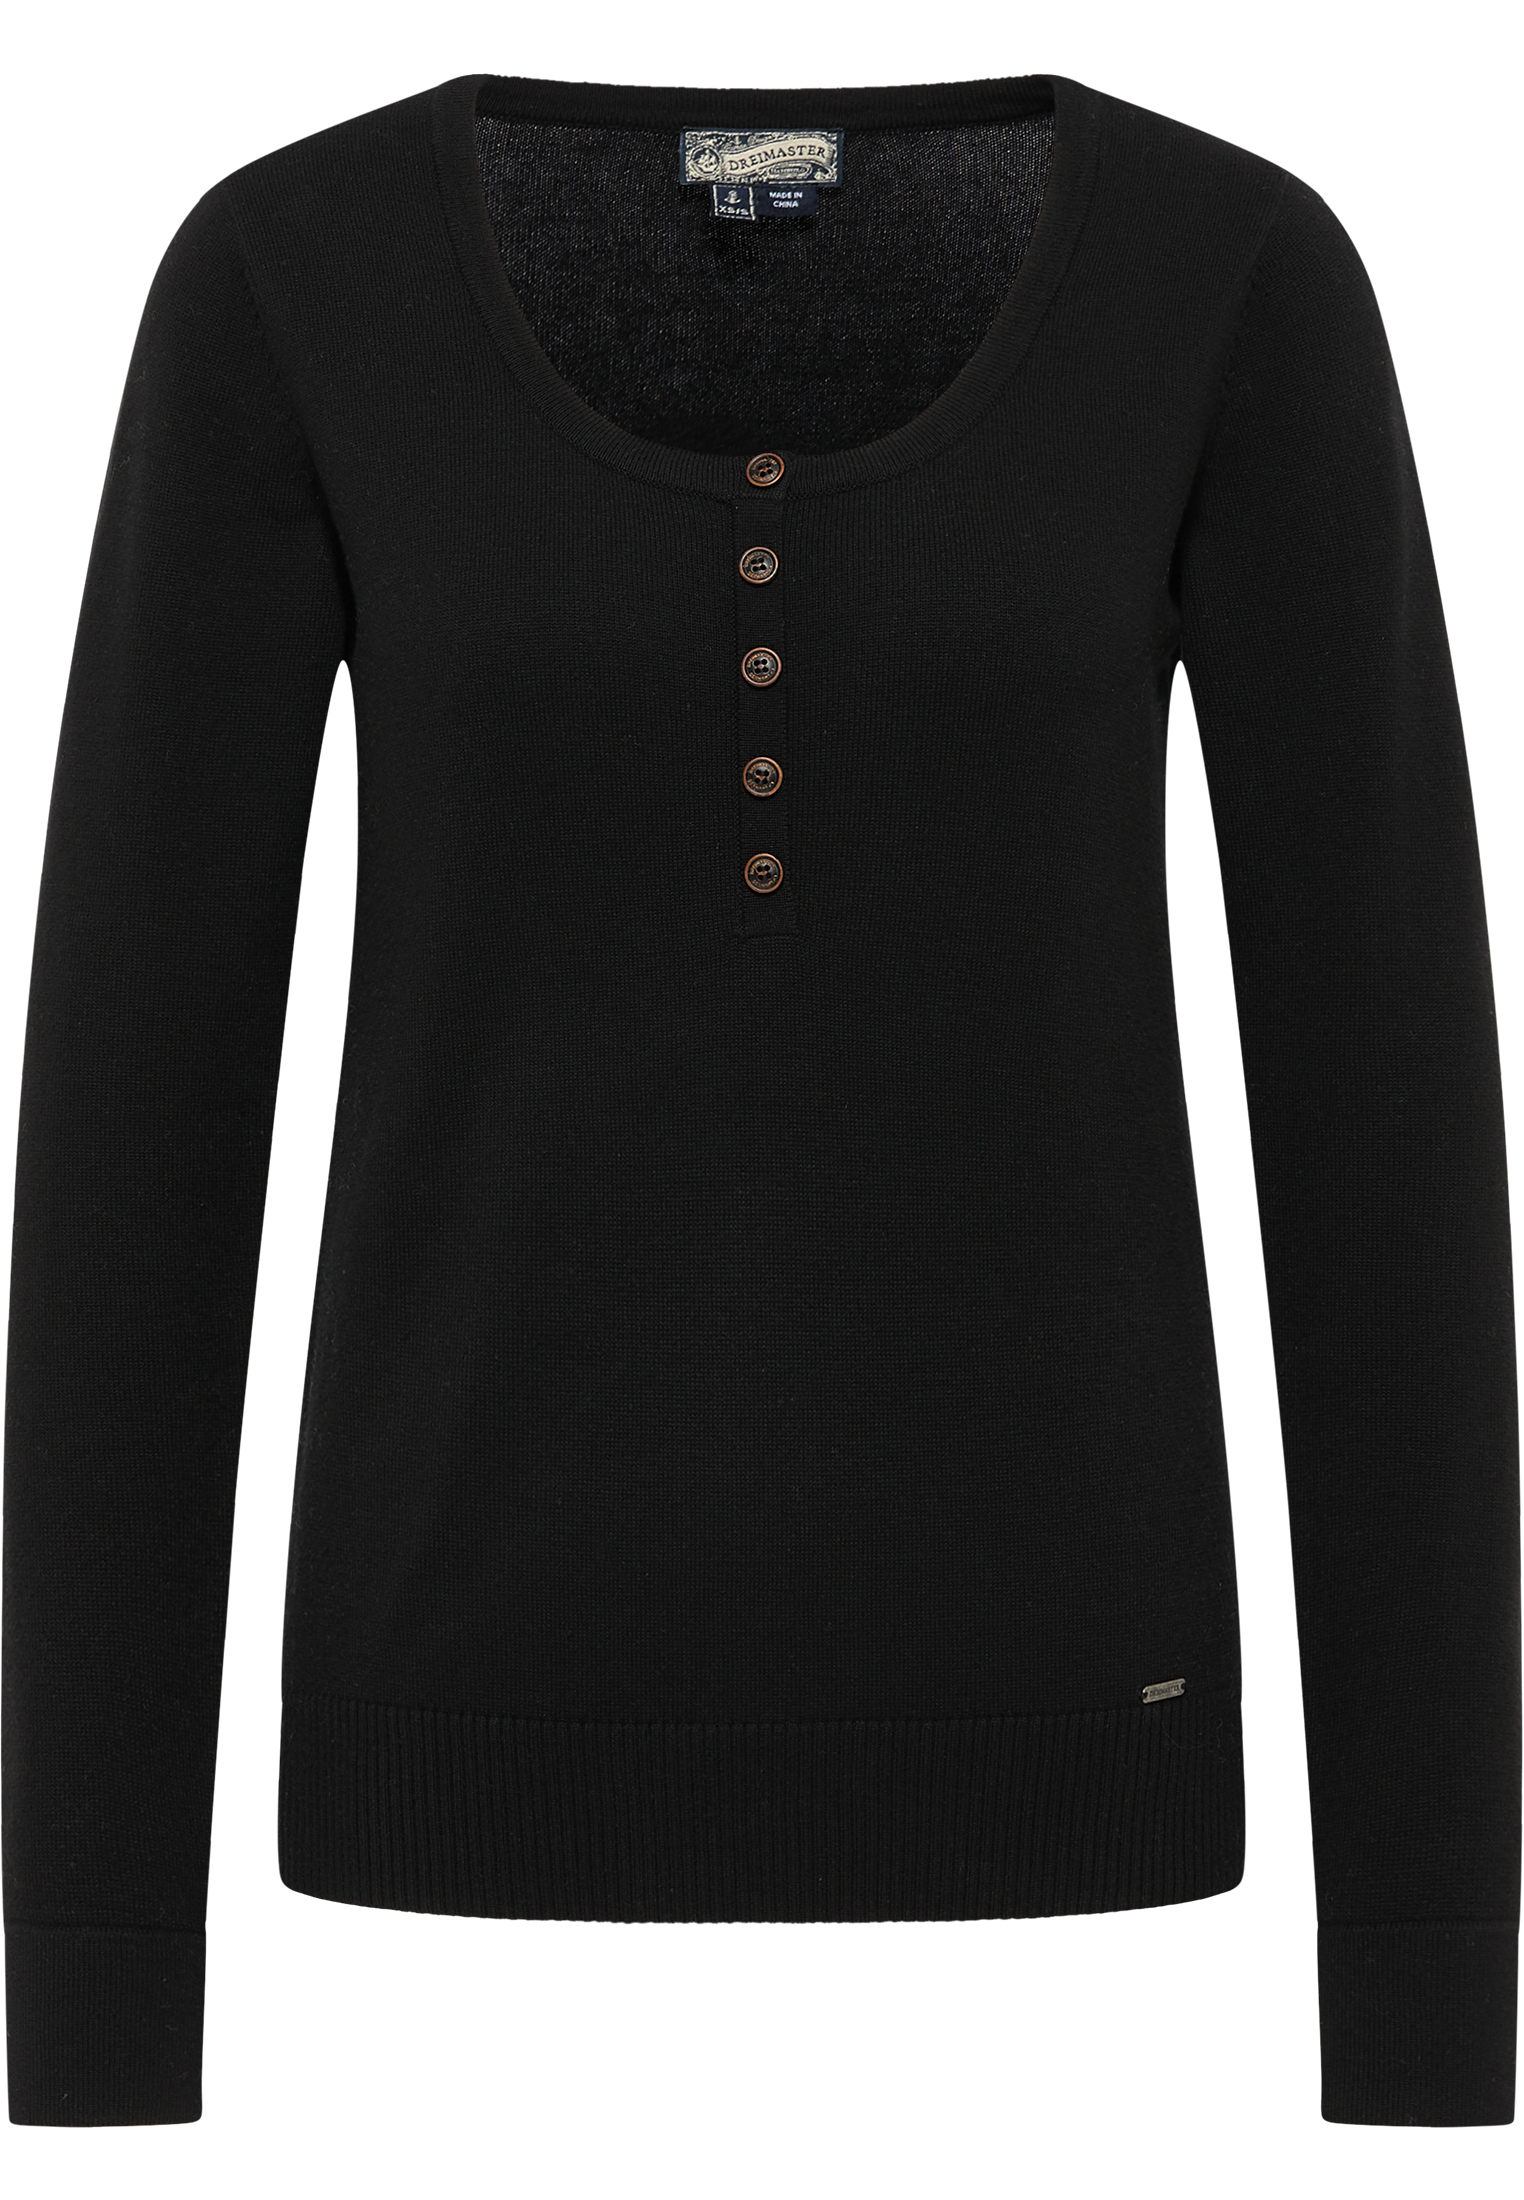 Swetry & dzianina Odzież DreiMaster Vintage Sweter w kolorze Czarnym 